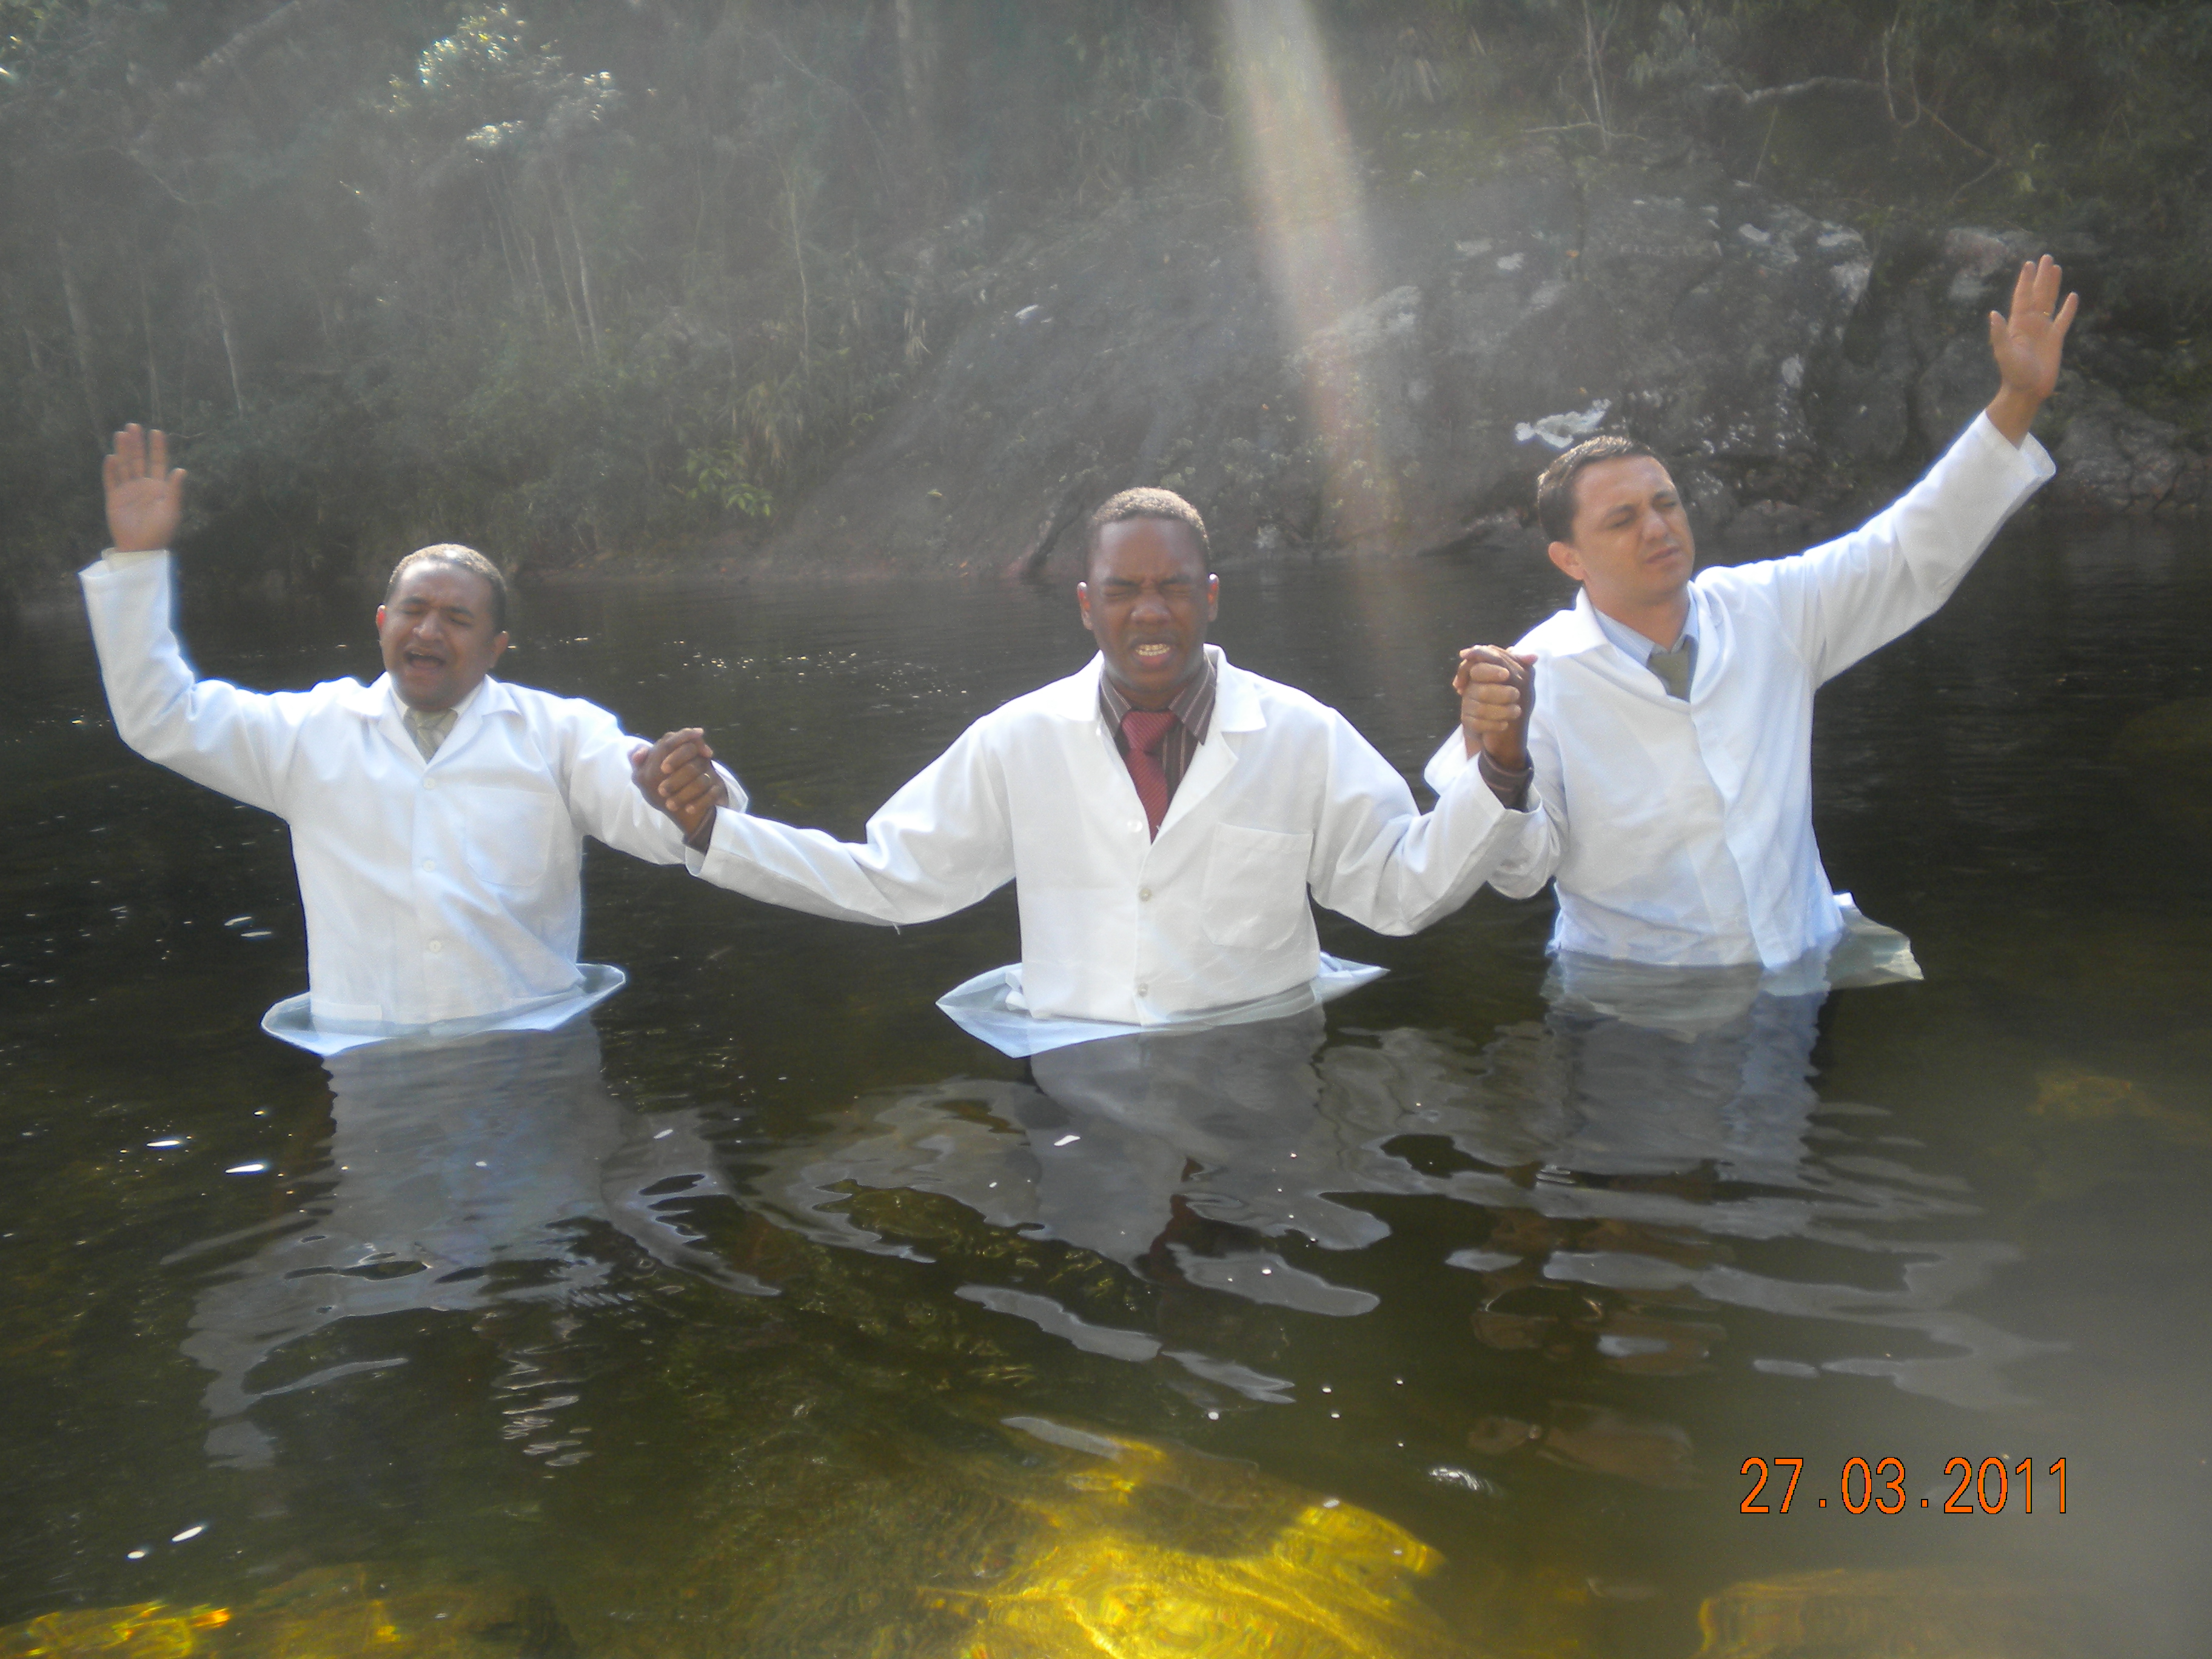 1º Batismo nas águas da Palavra Profética (27.03.2011)